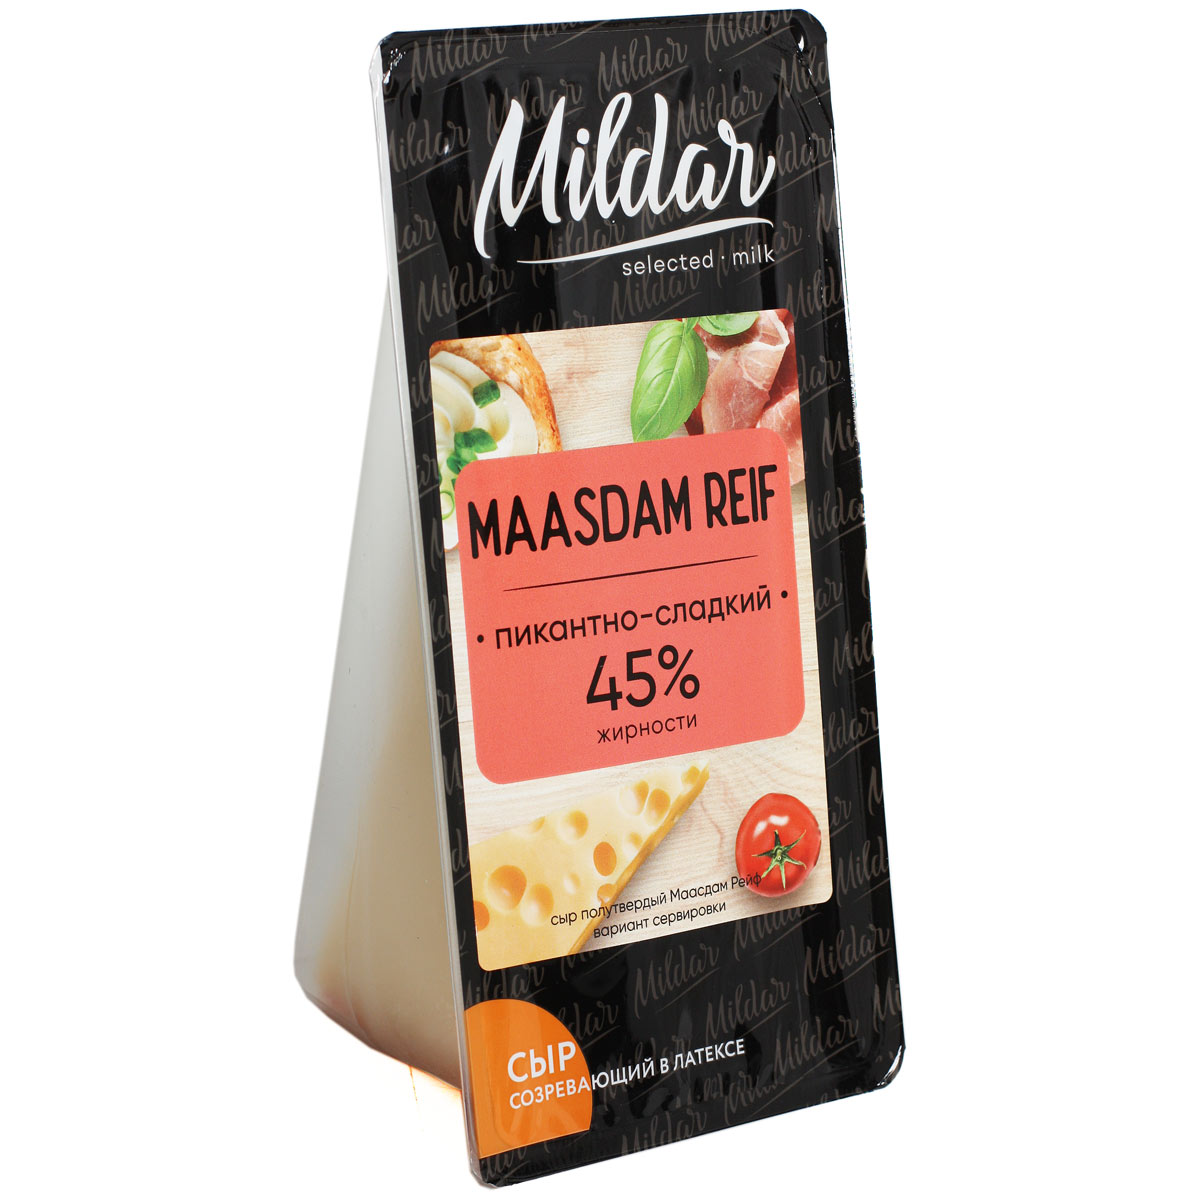 MILDAR MAASDAM REIF сыр Маасдам Рейф 45% 220г